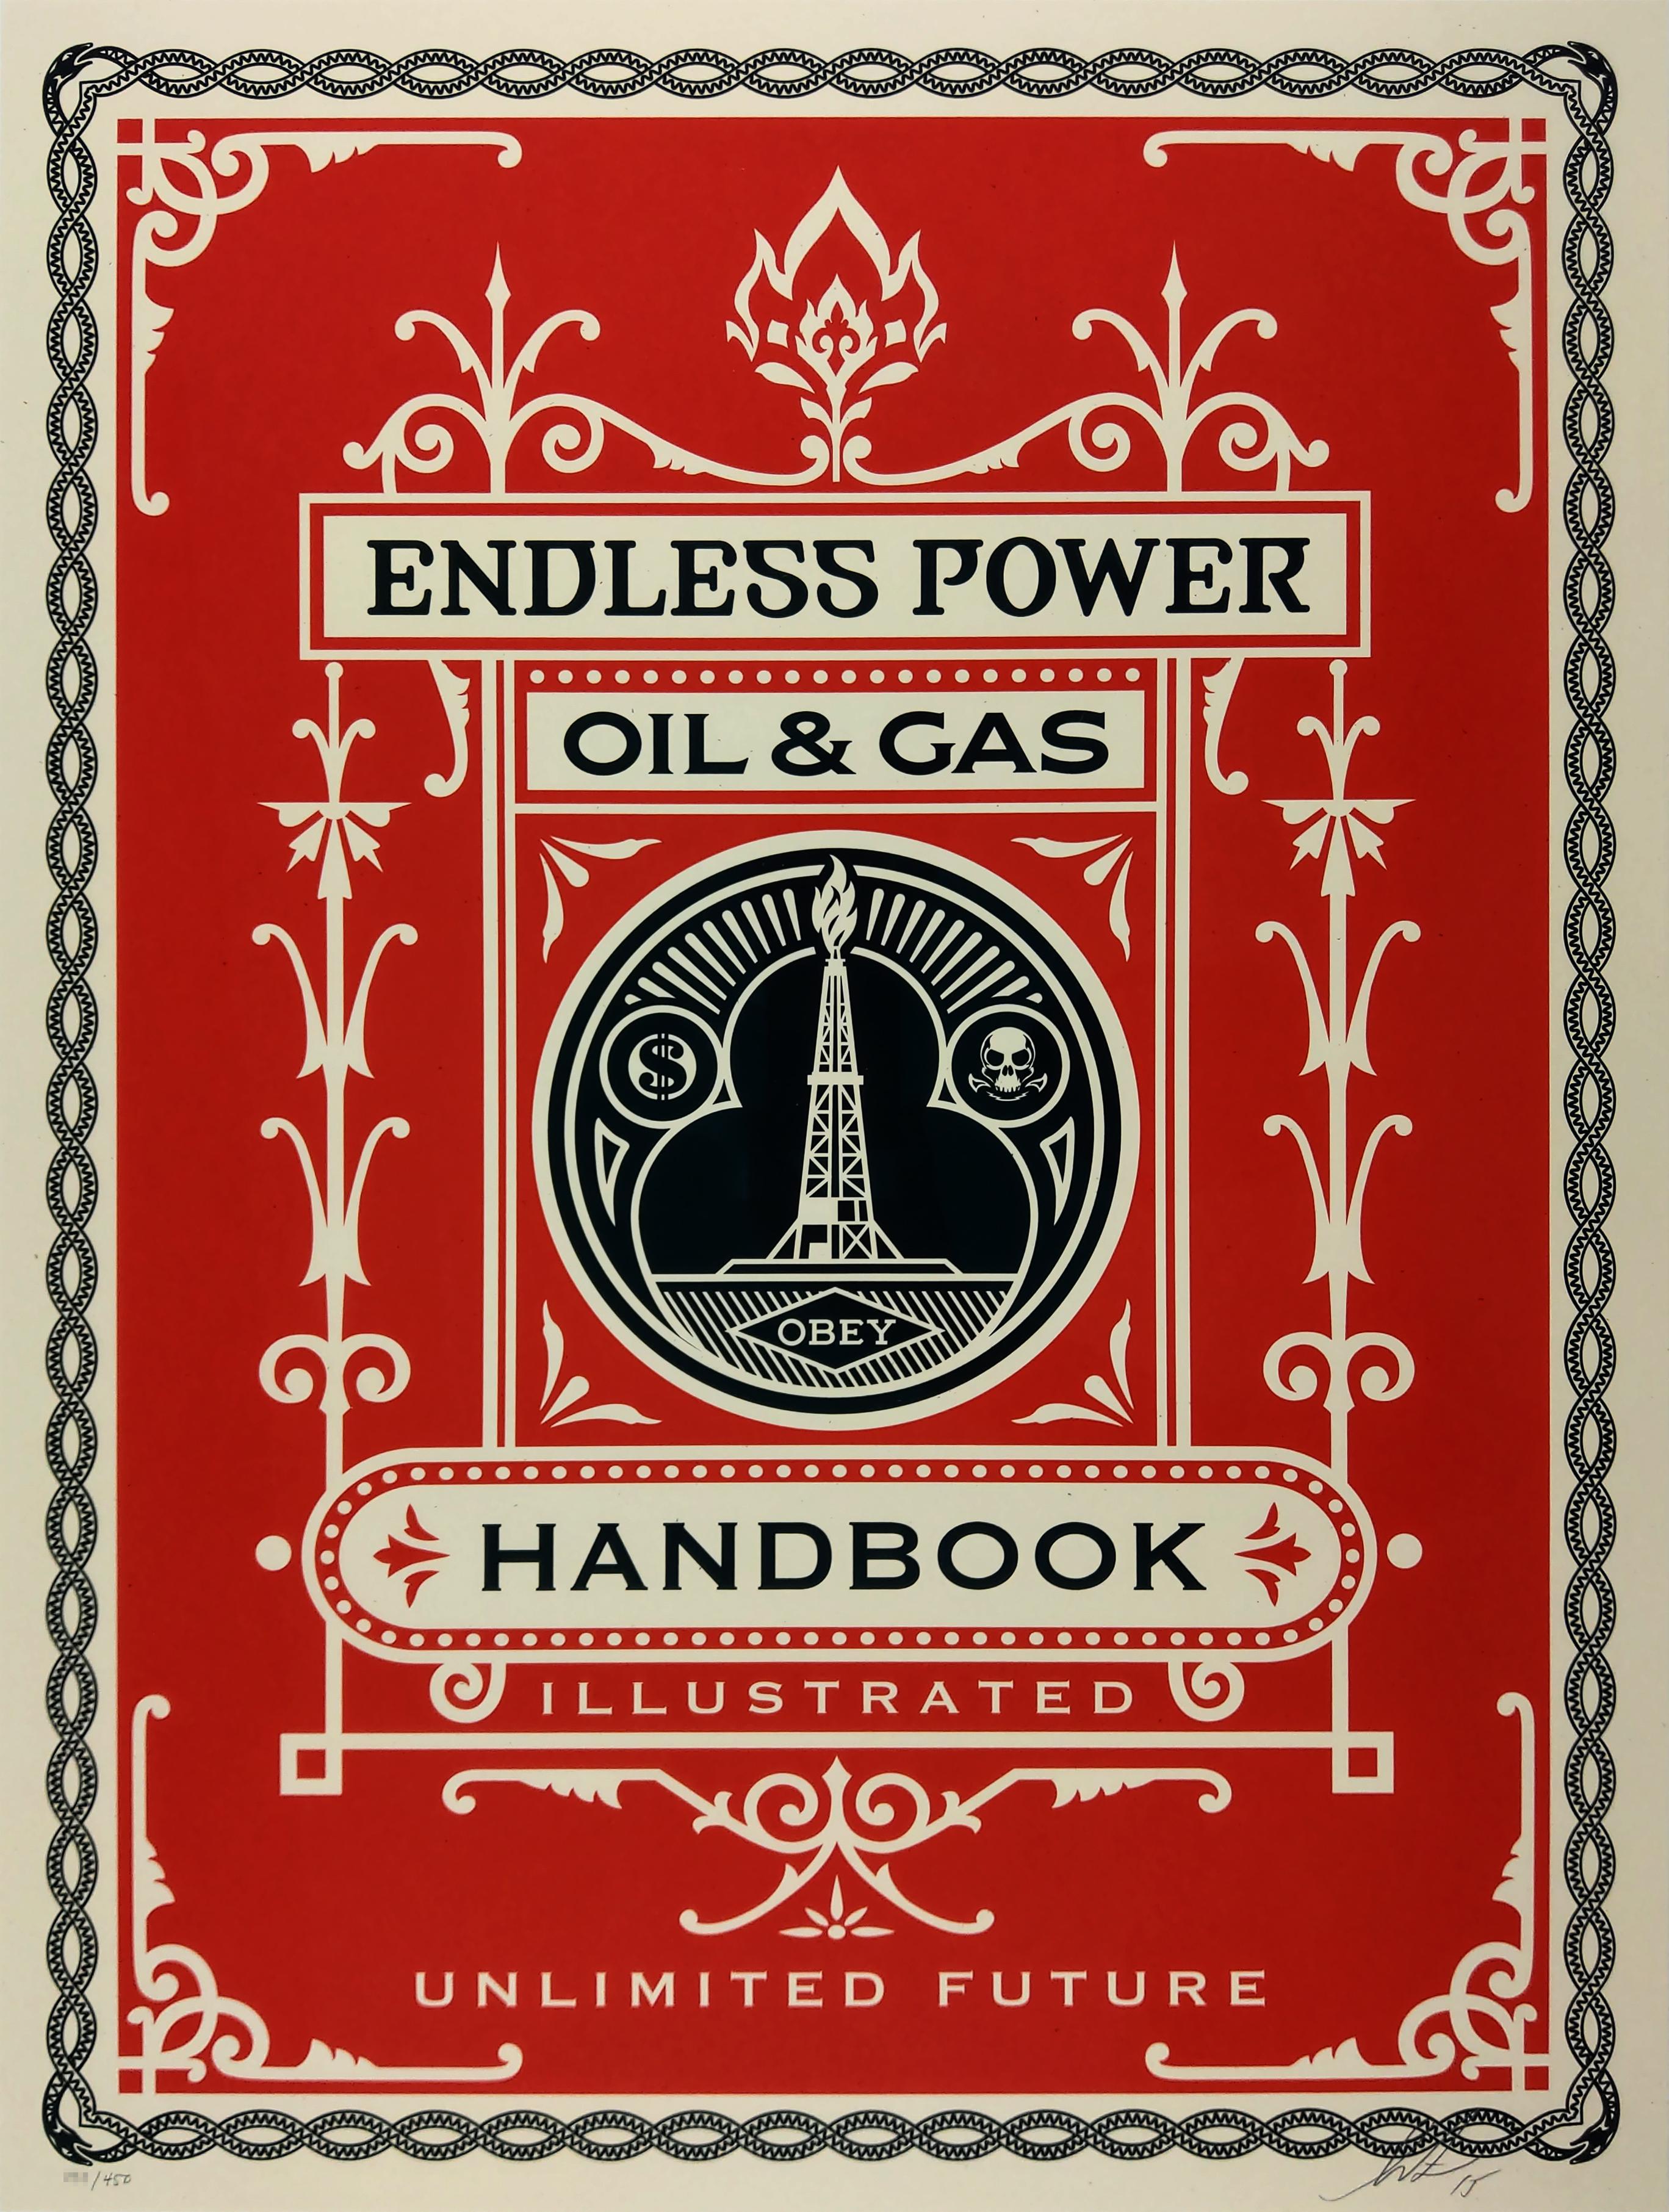 Endless Power Handbook - Shepard Fairey Obey Contemporary Print. Siebdruck auf cremefarbenem Papier mit Sprenkeln. Signierte und nummerierte Auflage von 450 Exemplaren. 

Shepard Fairey gehört neben Banksy, Mr. Brainwash und anderen zu den